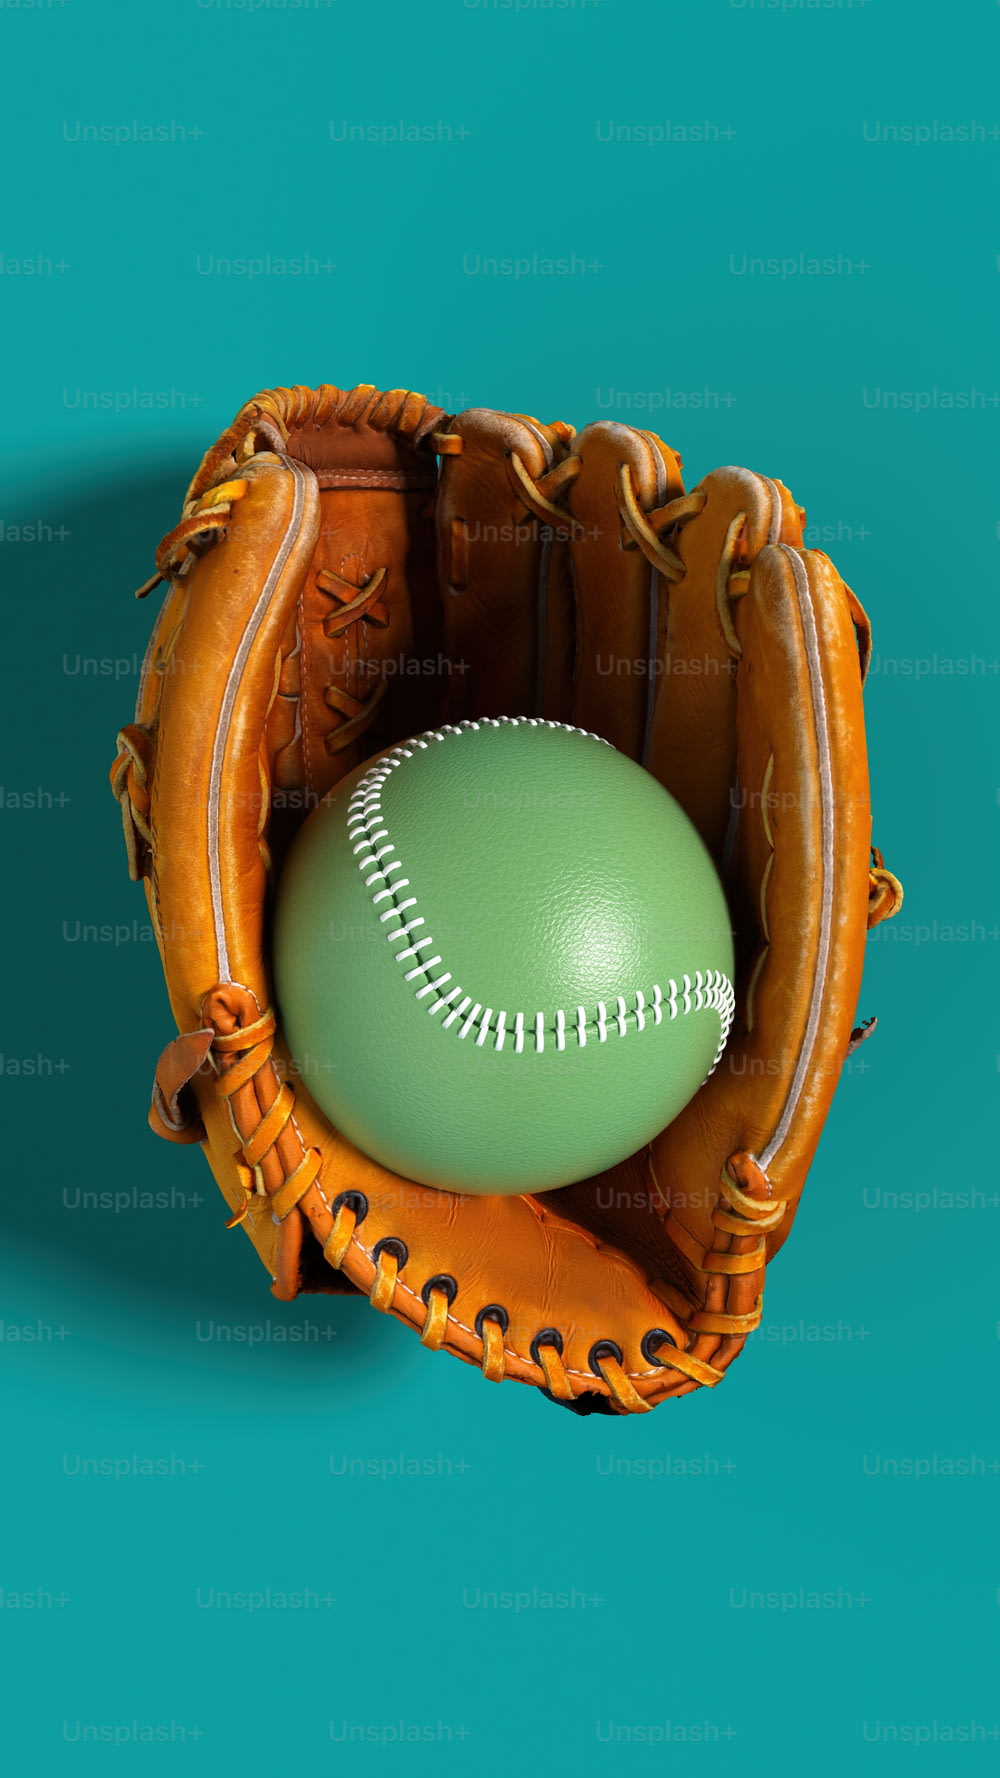 Una palla da baseball in un guanto catchers su uno sfondo blu